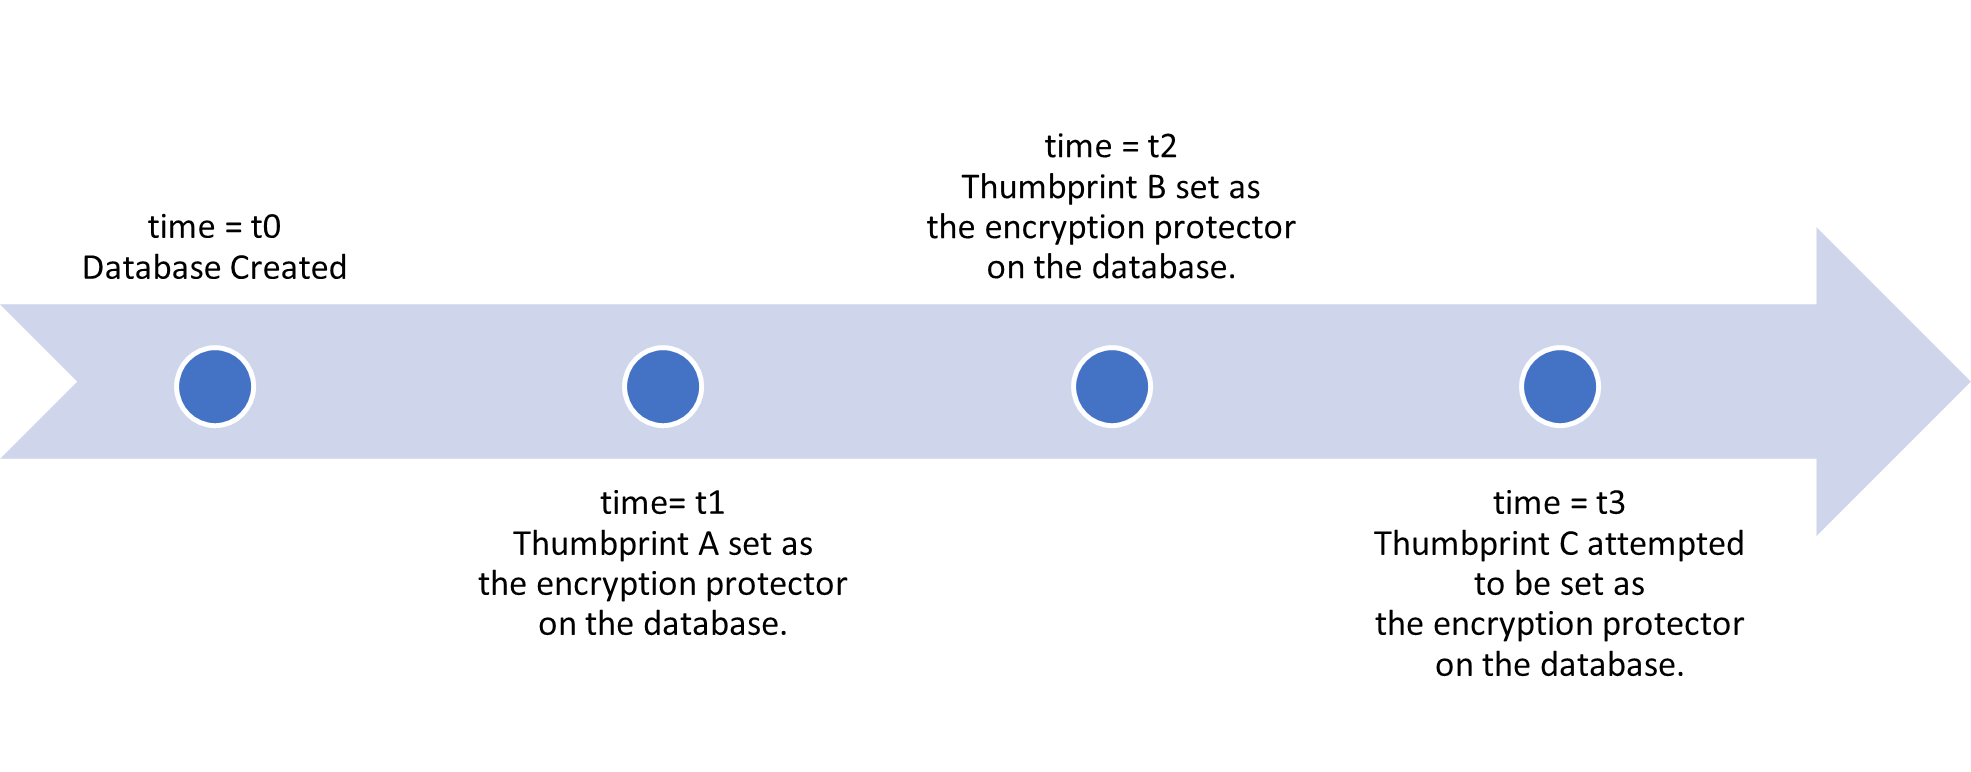 Un exemple de chronologie de rotations de clés sur une base de données configurée avec des clés gérées par le client au niveau de la base de données.